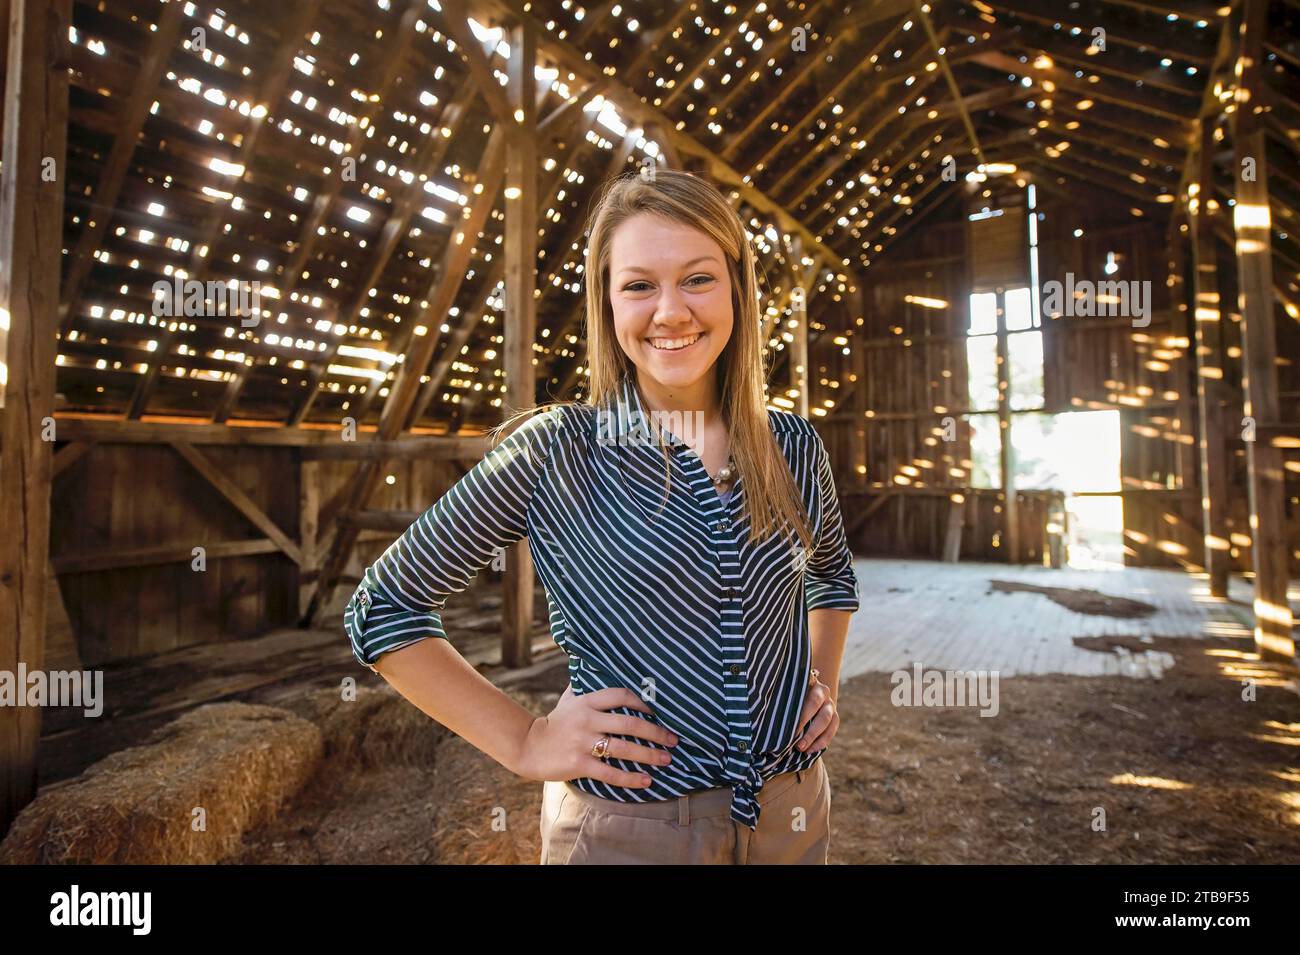 Porträt eines Jugendlichen Mädchens in einer alten Scheune; Dunbar, Nebraska, Vereinigte Staaten von Amerika Stockfoto